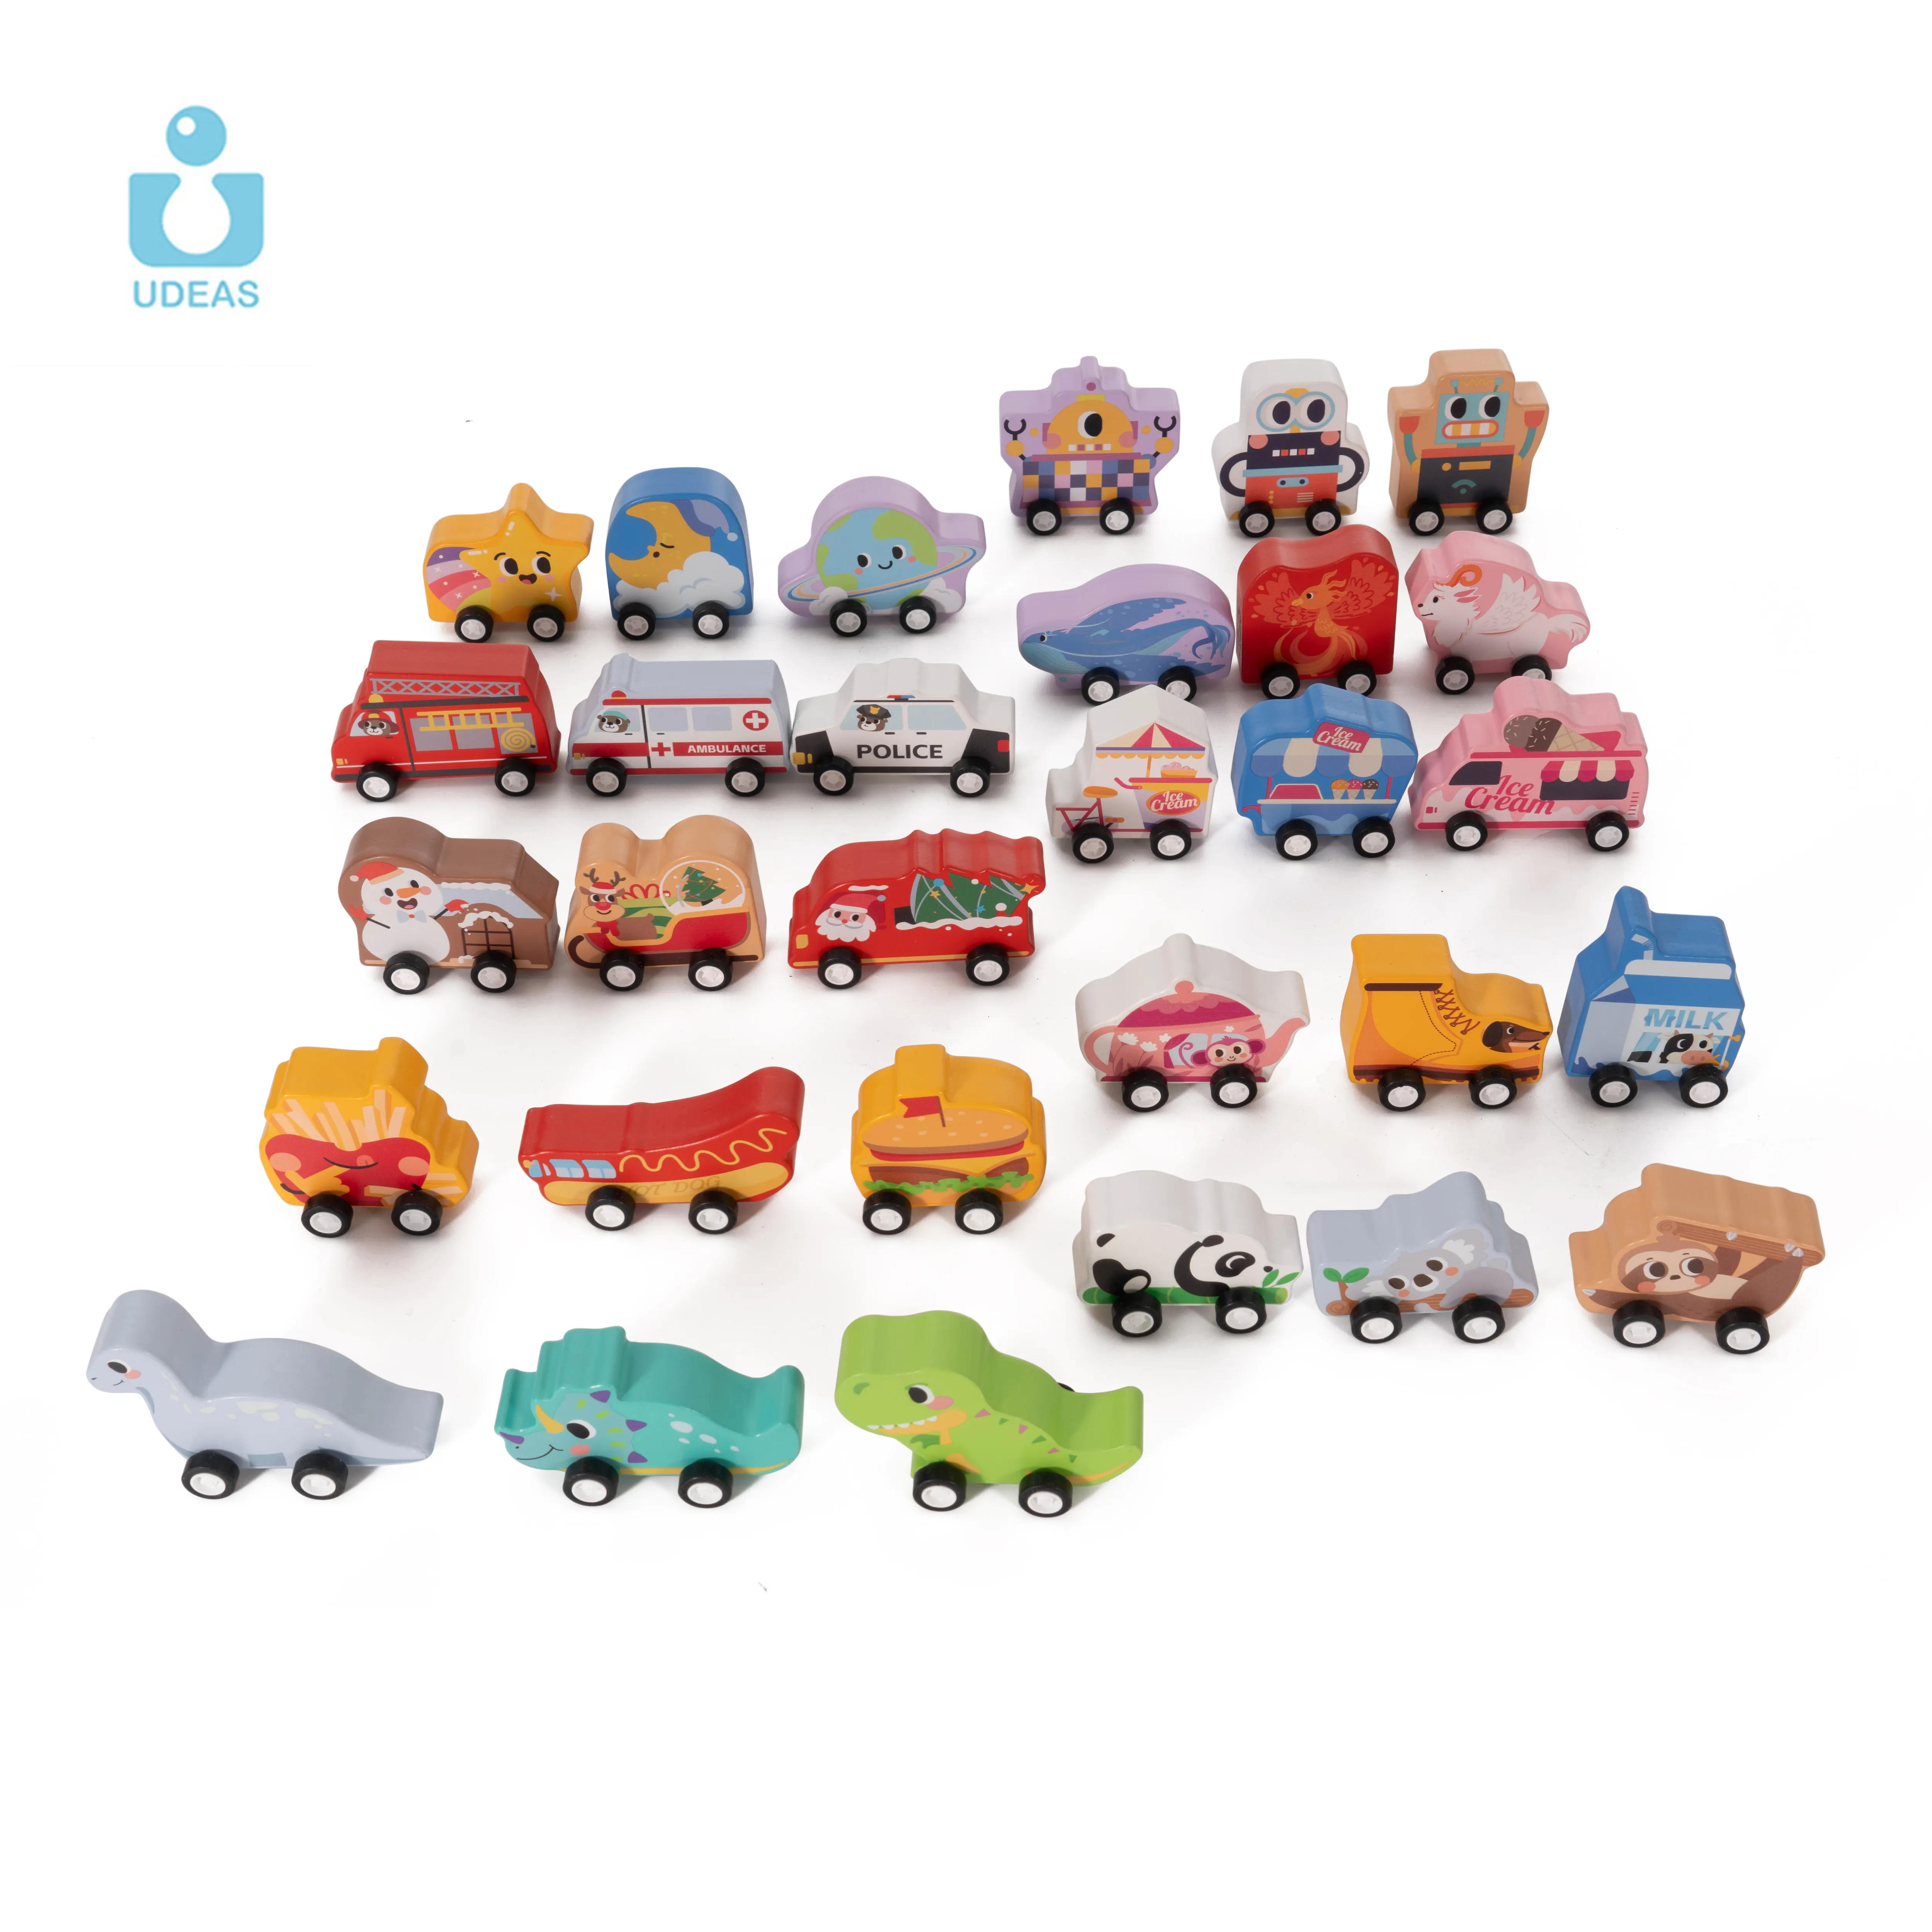 UDEAS Montessori Jouet éducatif précoce en bois Cartoon Traffic Car Model Sliding Wooden Car Toy